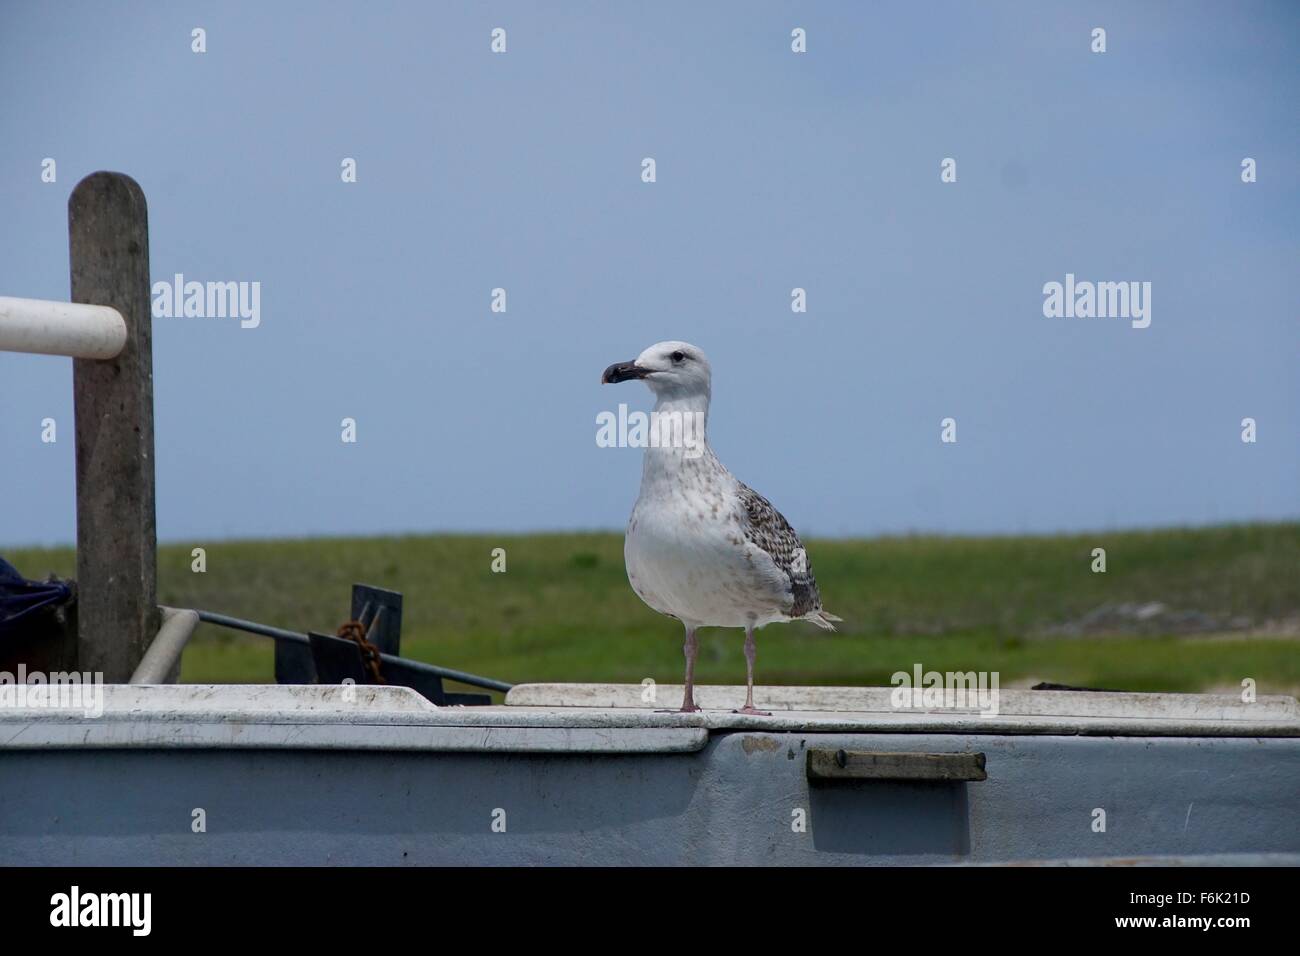 Aringa Gabbiano seduta sul lato di una barca a remi, Chatham, Cape Cod, STATI UNITI D'AMERICA Foto Stock